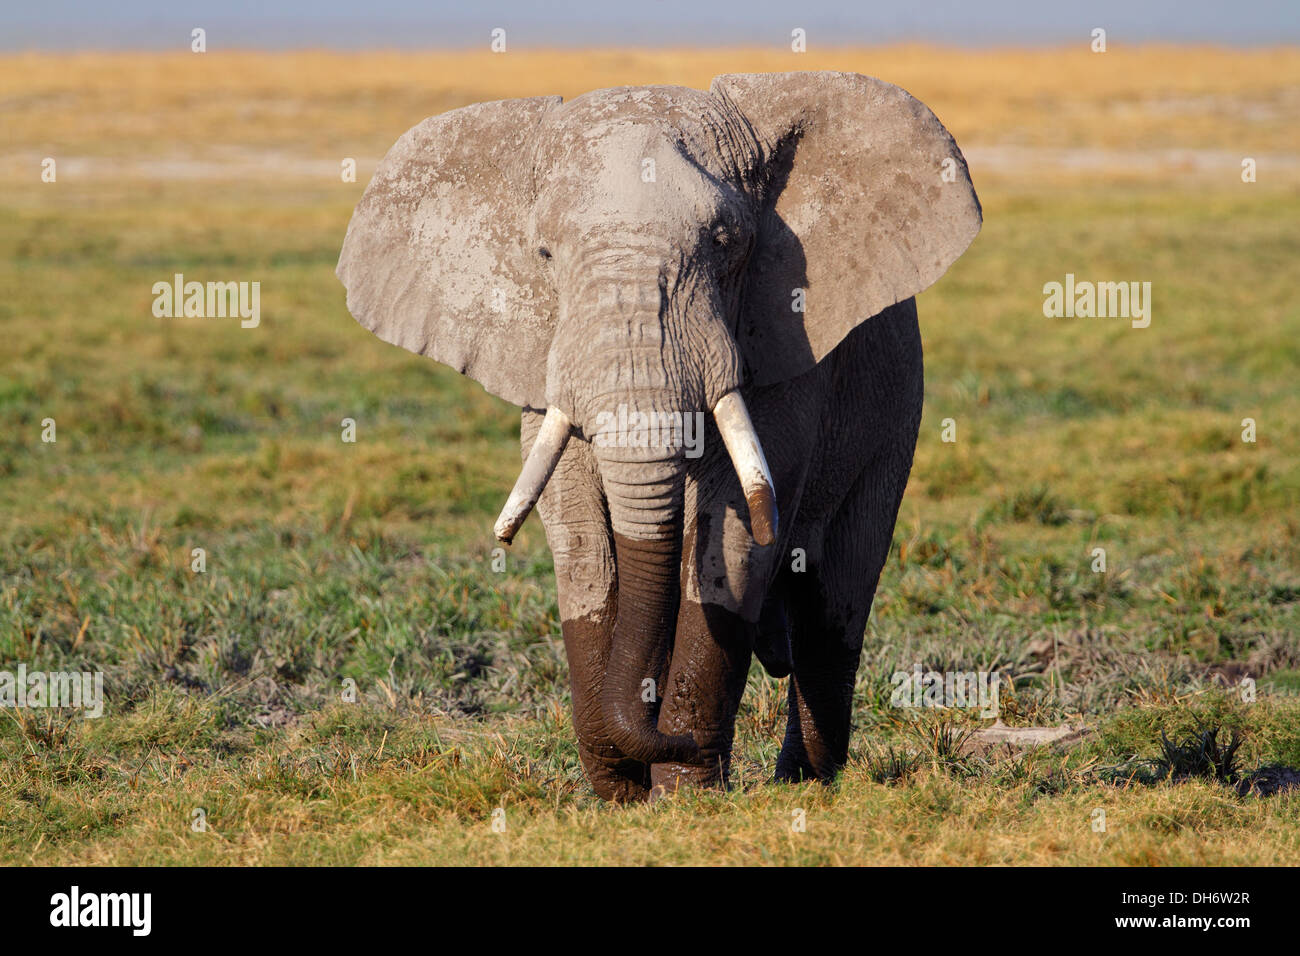 African bull elephant (Loxodonta africana), Amboseli National Park, Kenya Stock Photo